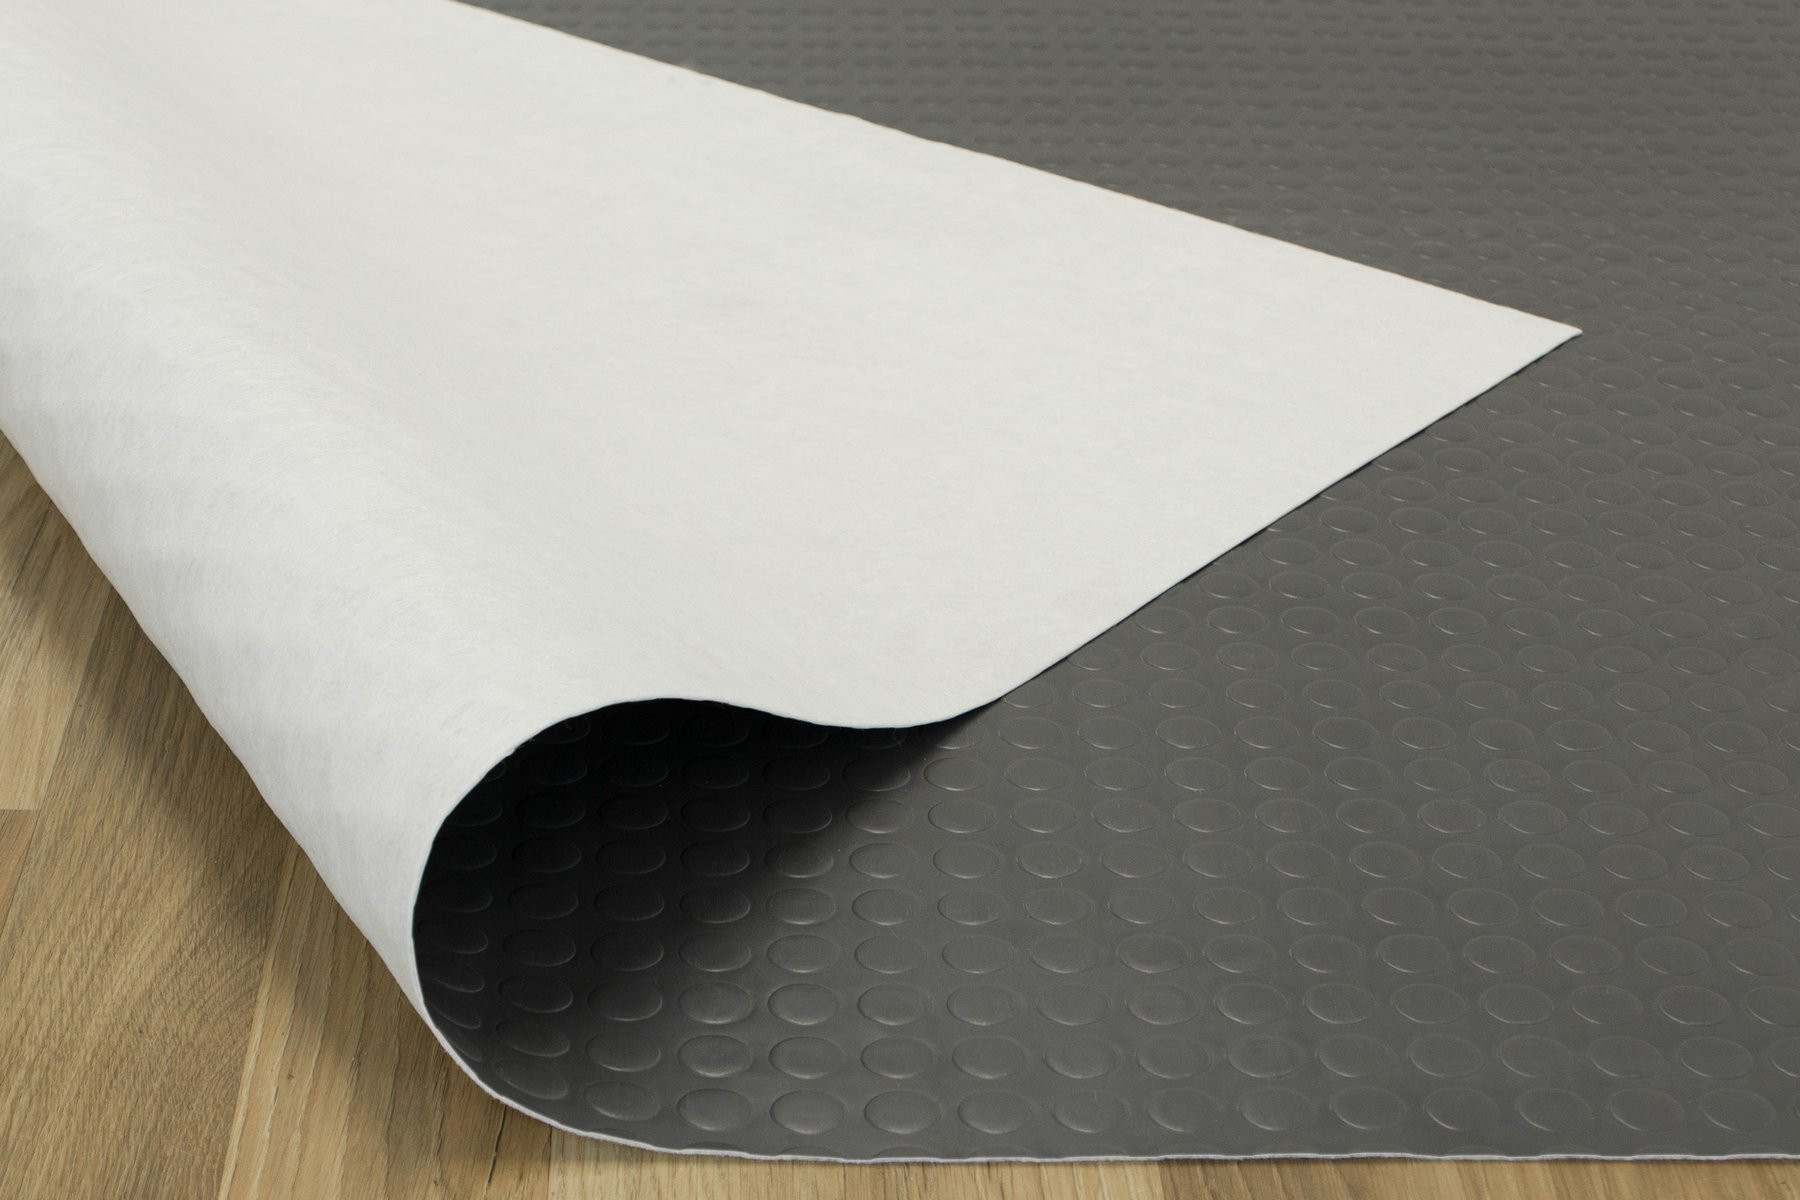 PVC podlaha Texfloor šedá